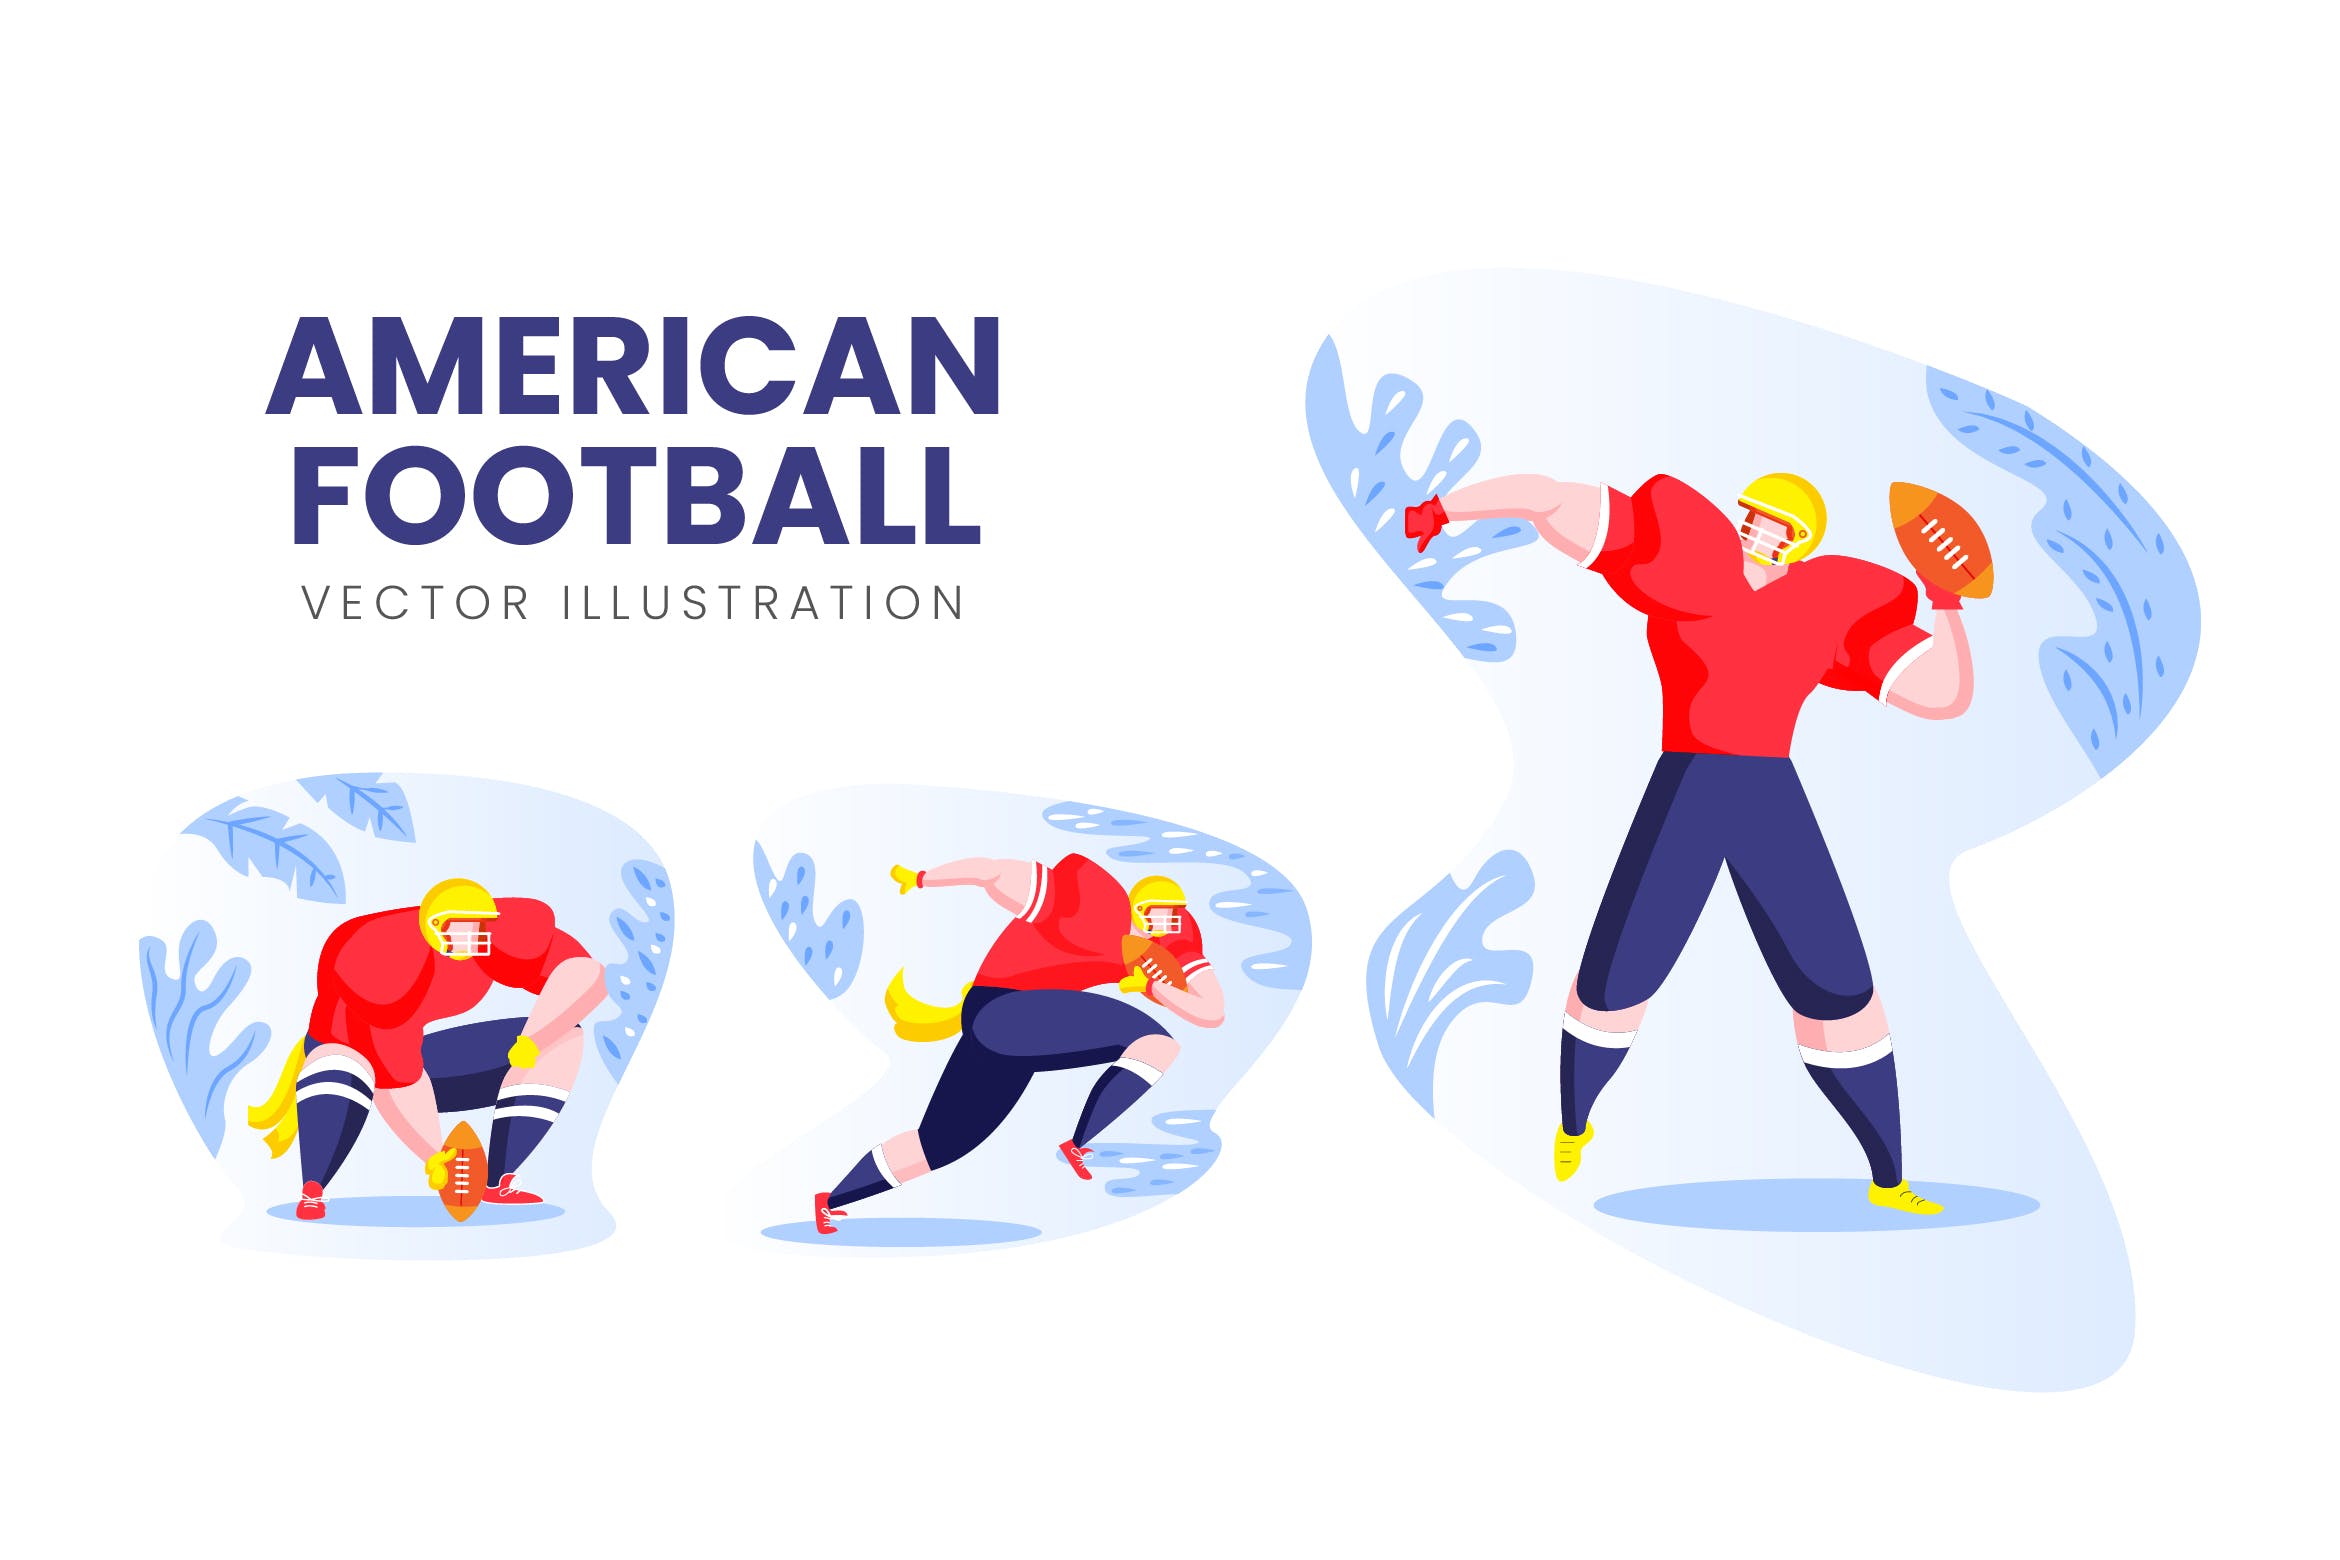 美式足球运动员人物形象非凡图库精选手绘插画矢量素材 American Football Vector Character Set插图